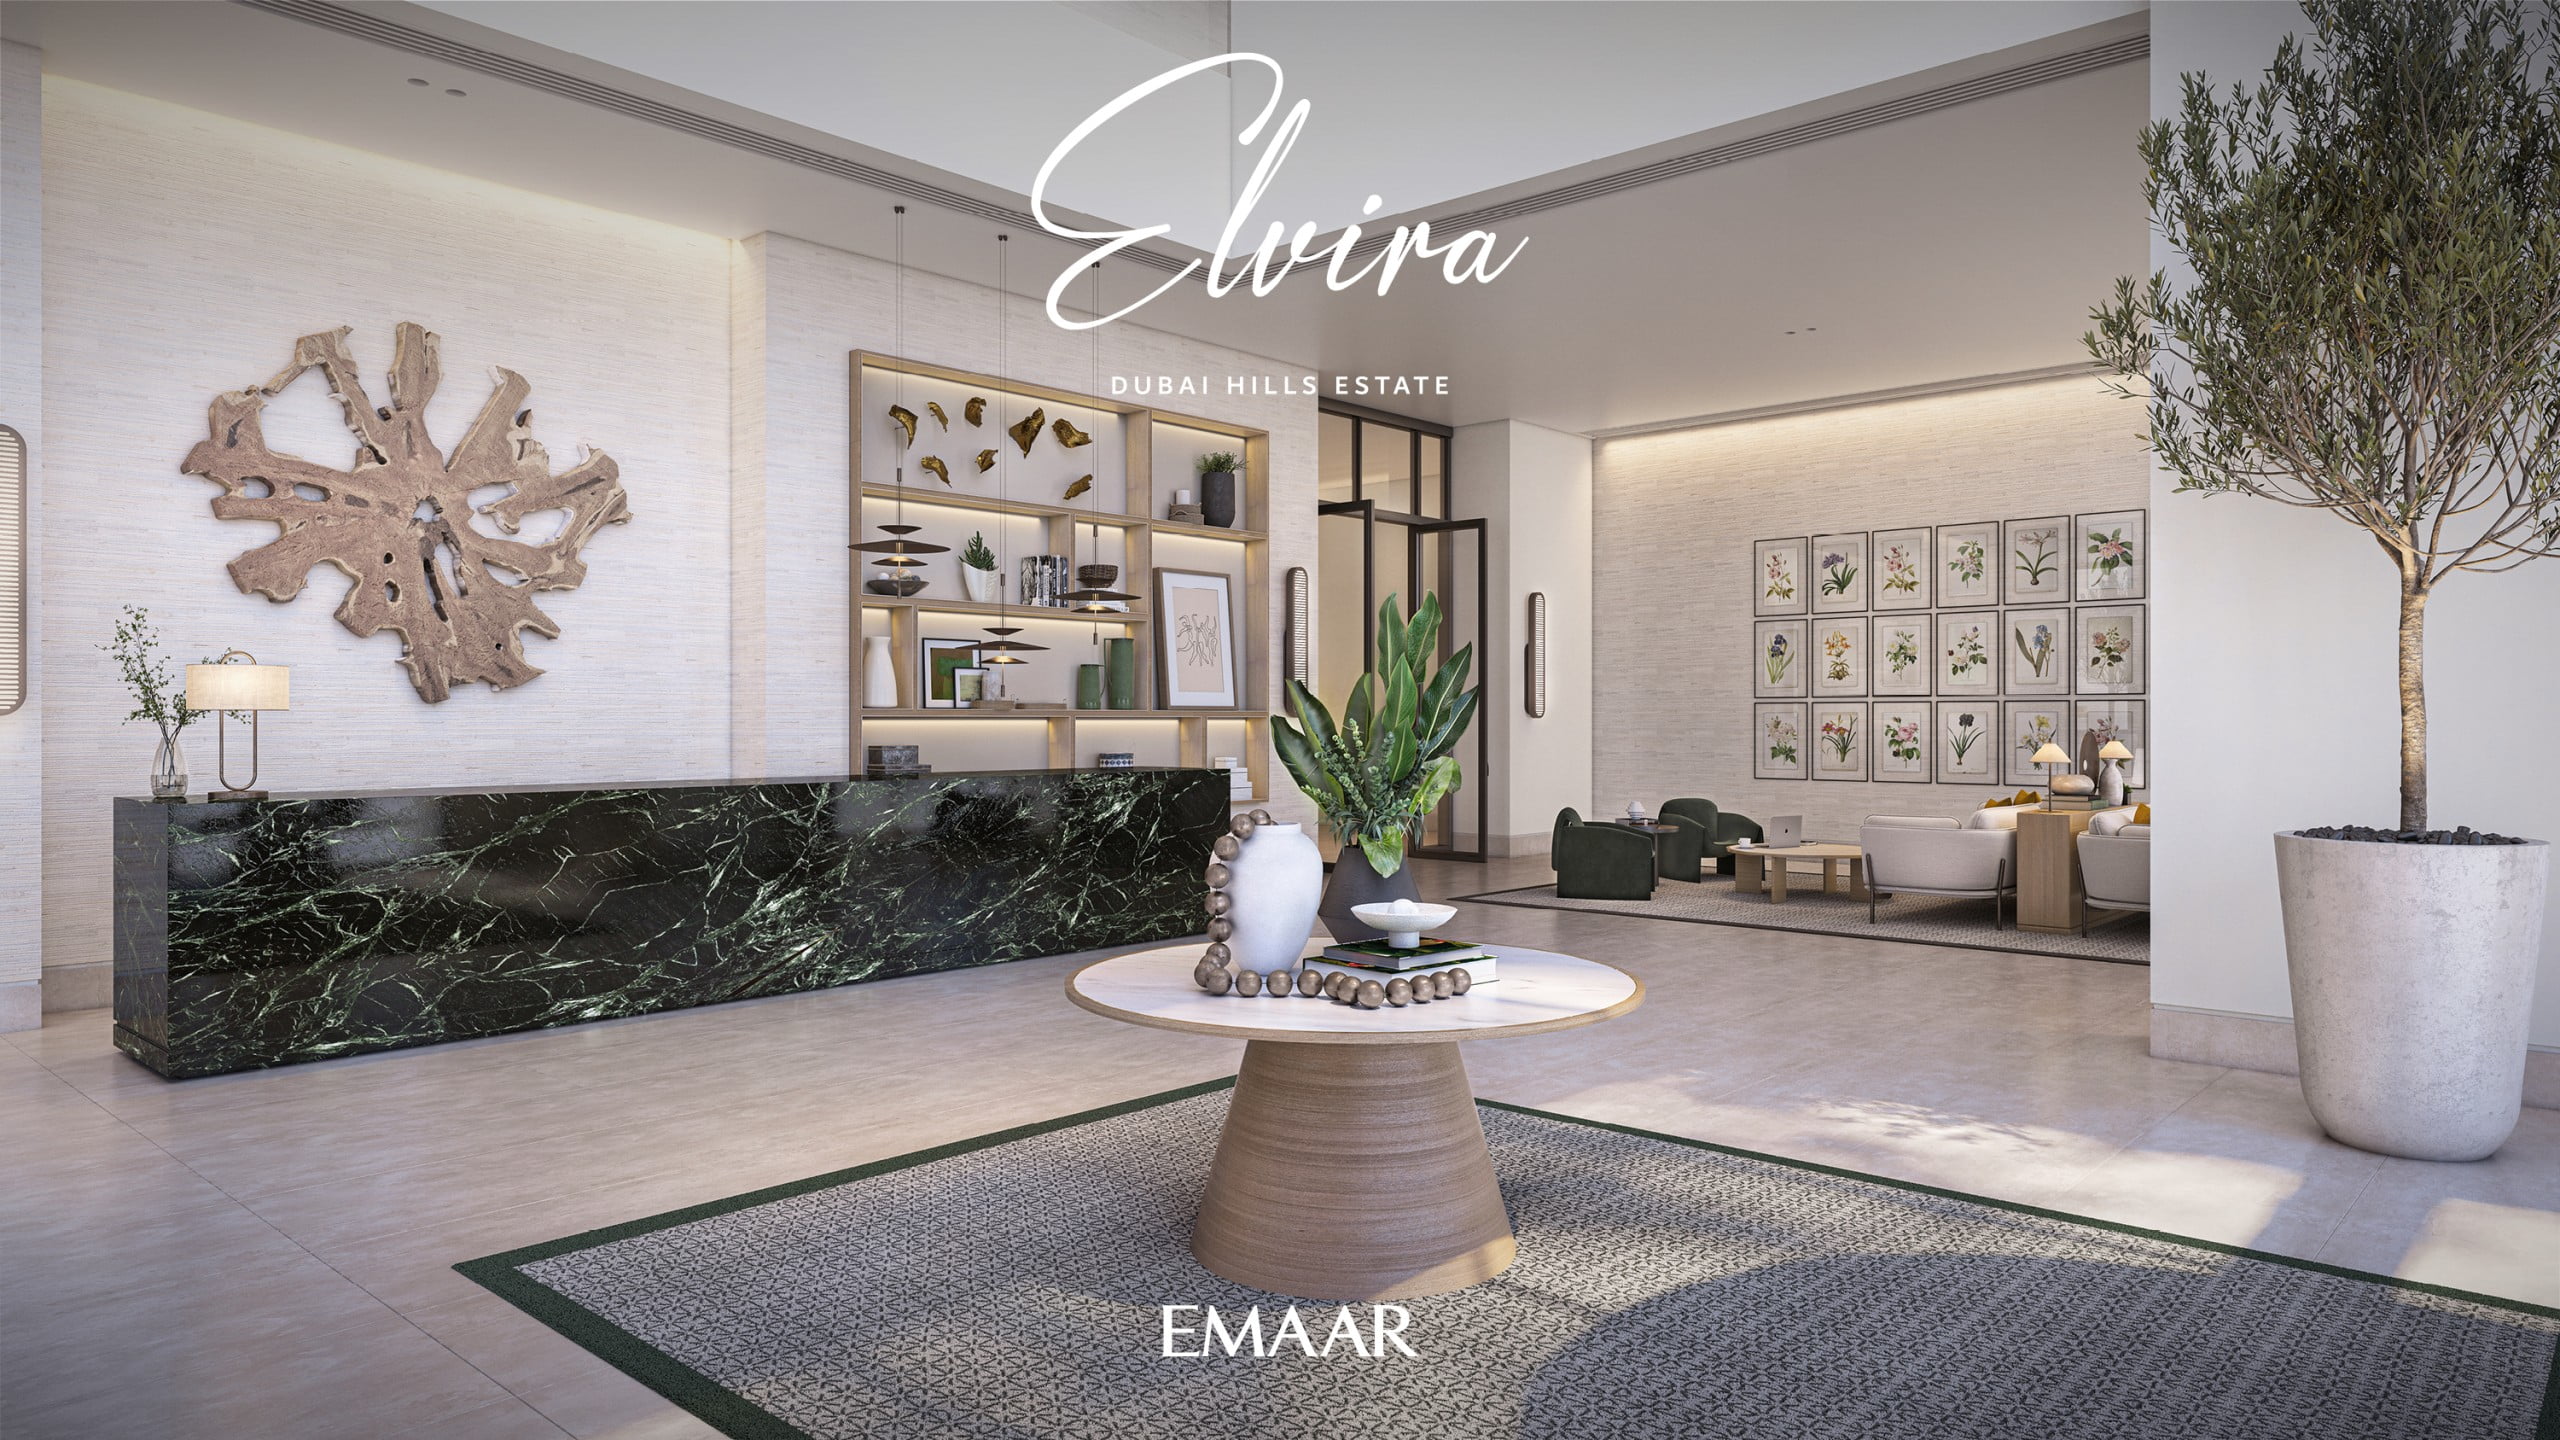 DHE ELVIRA RENDERS8 scaled - Immobilier Dubai